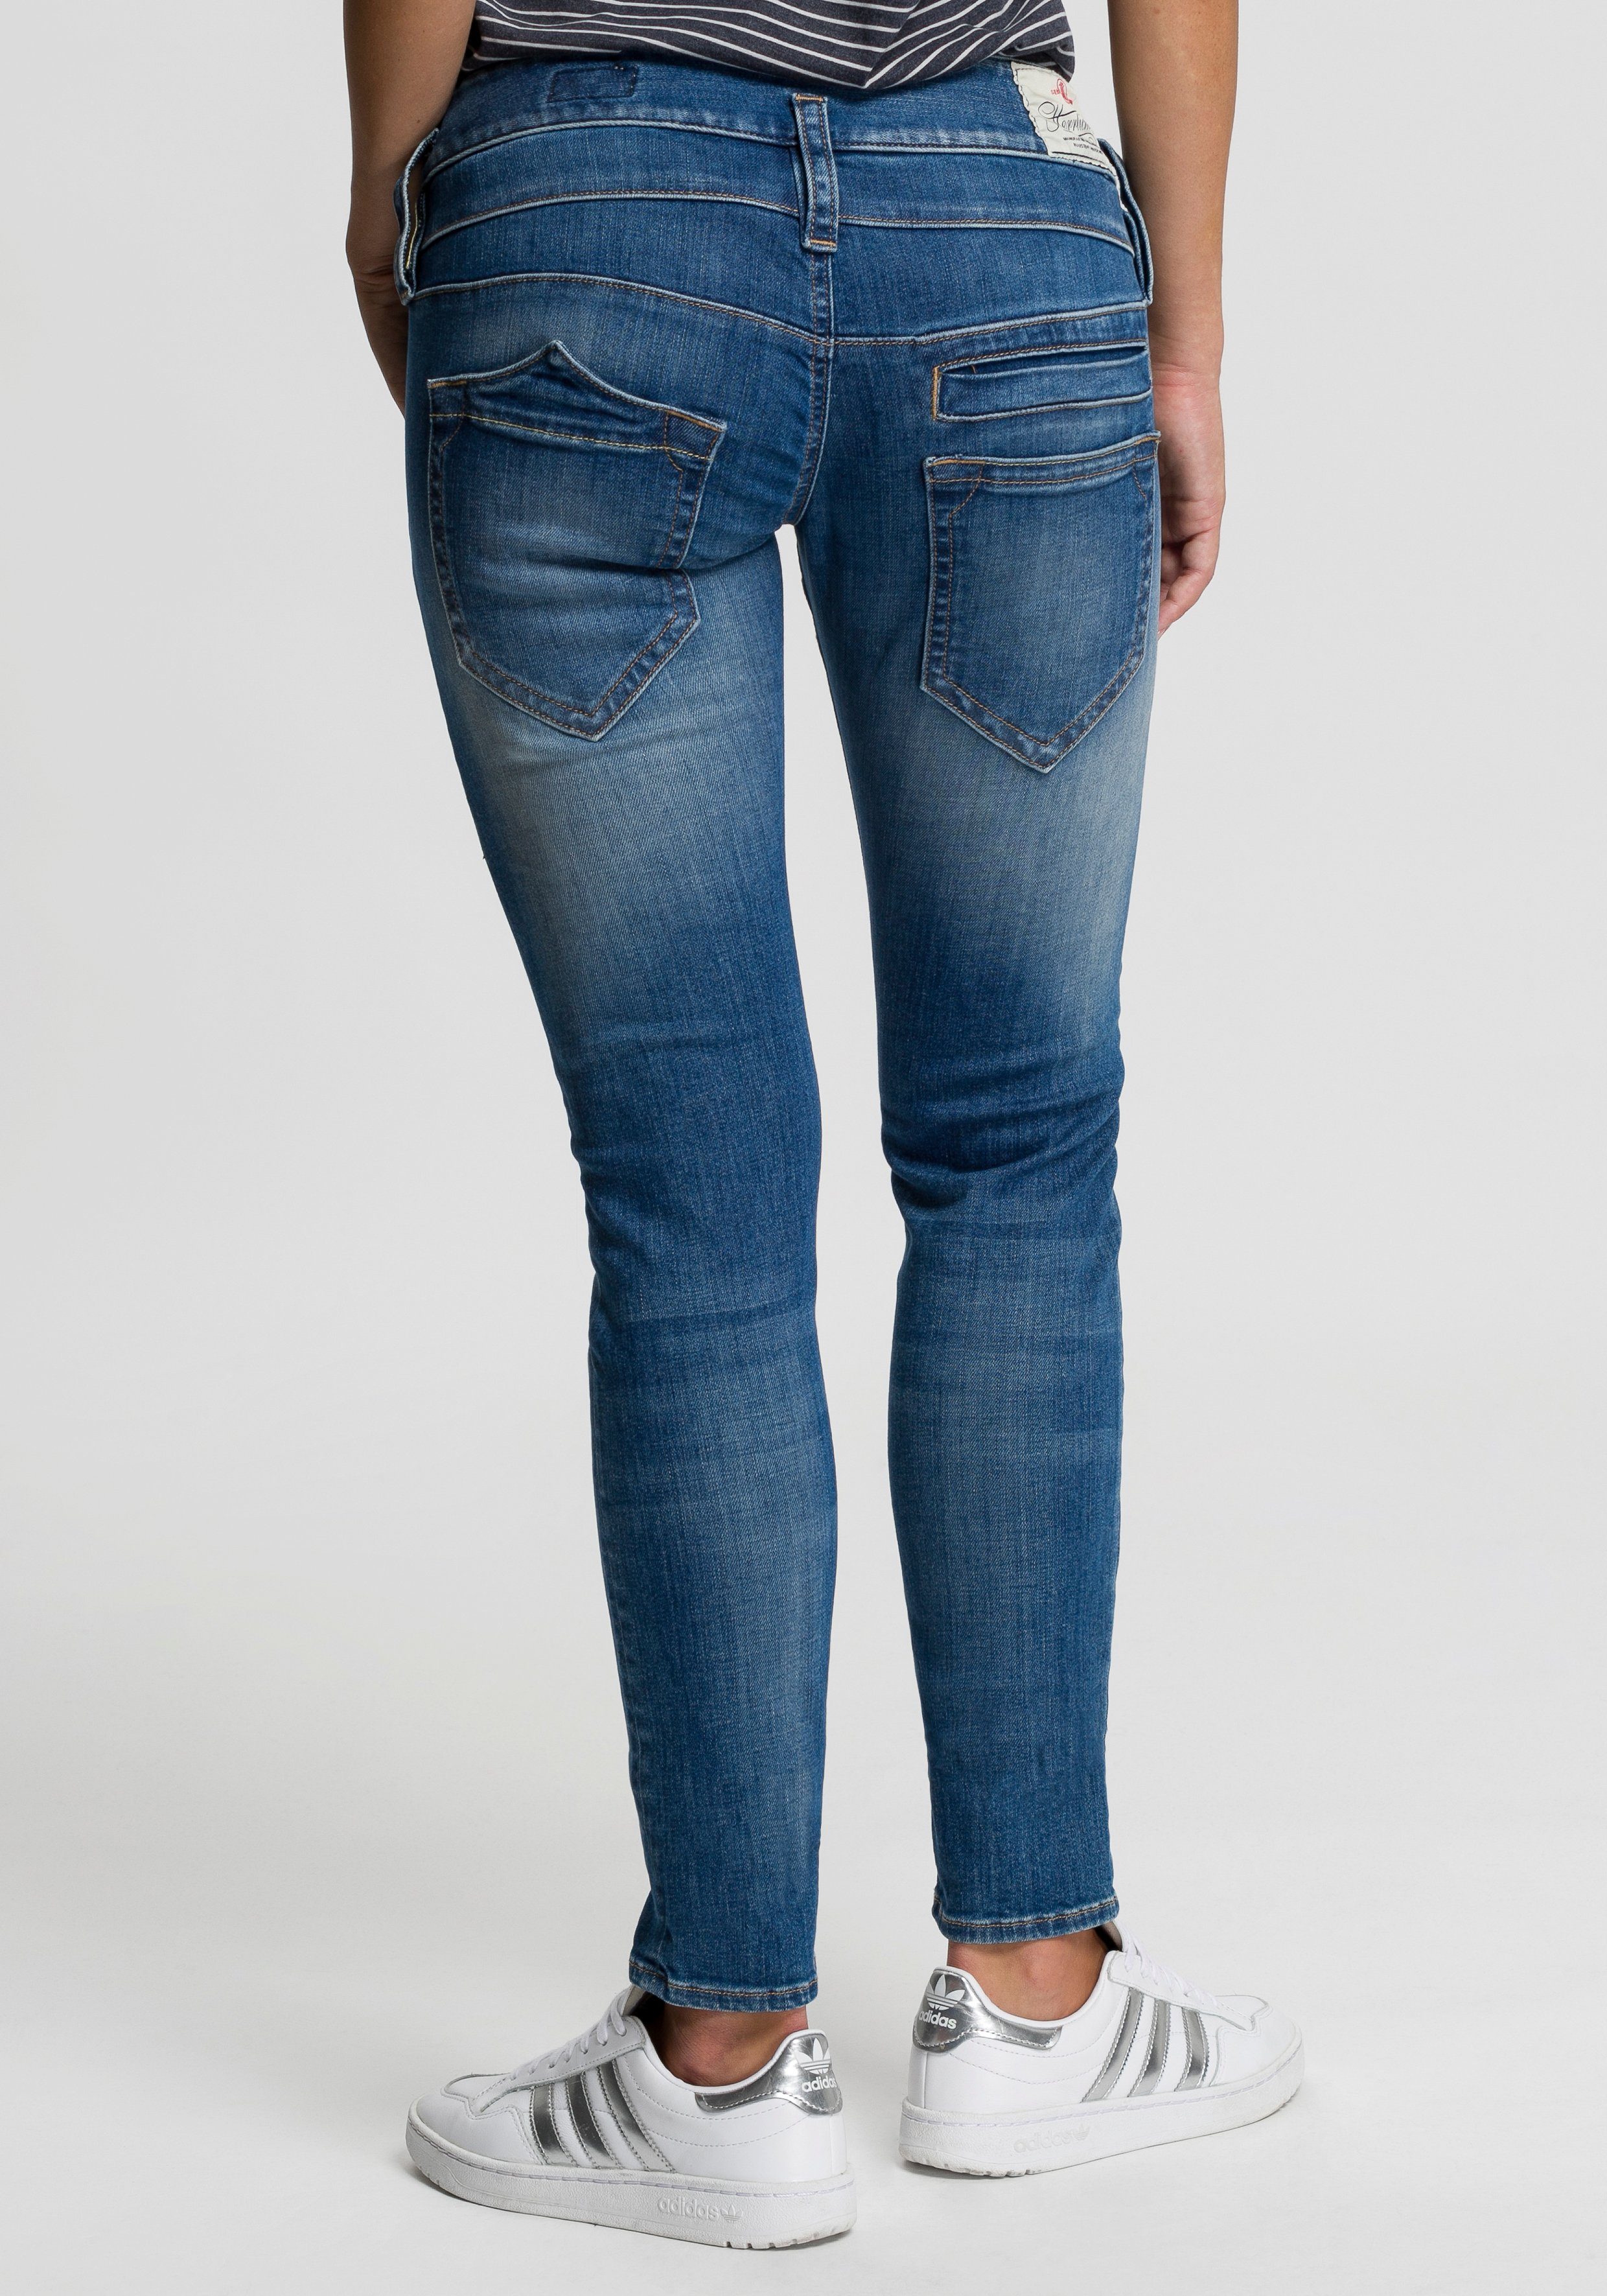 Herrlicher Slim-fit-Jeans PITCH SLIM ORGANIC sea 879 blue Vintage-Style Abriebeffekten mit